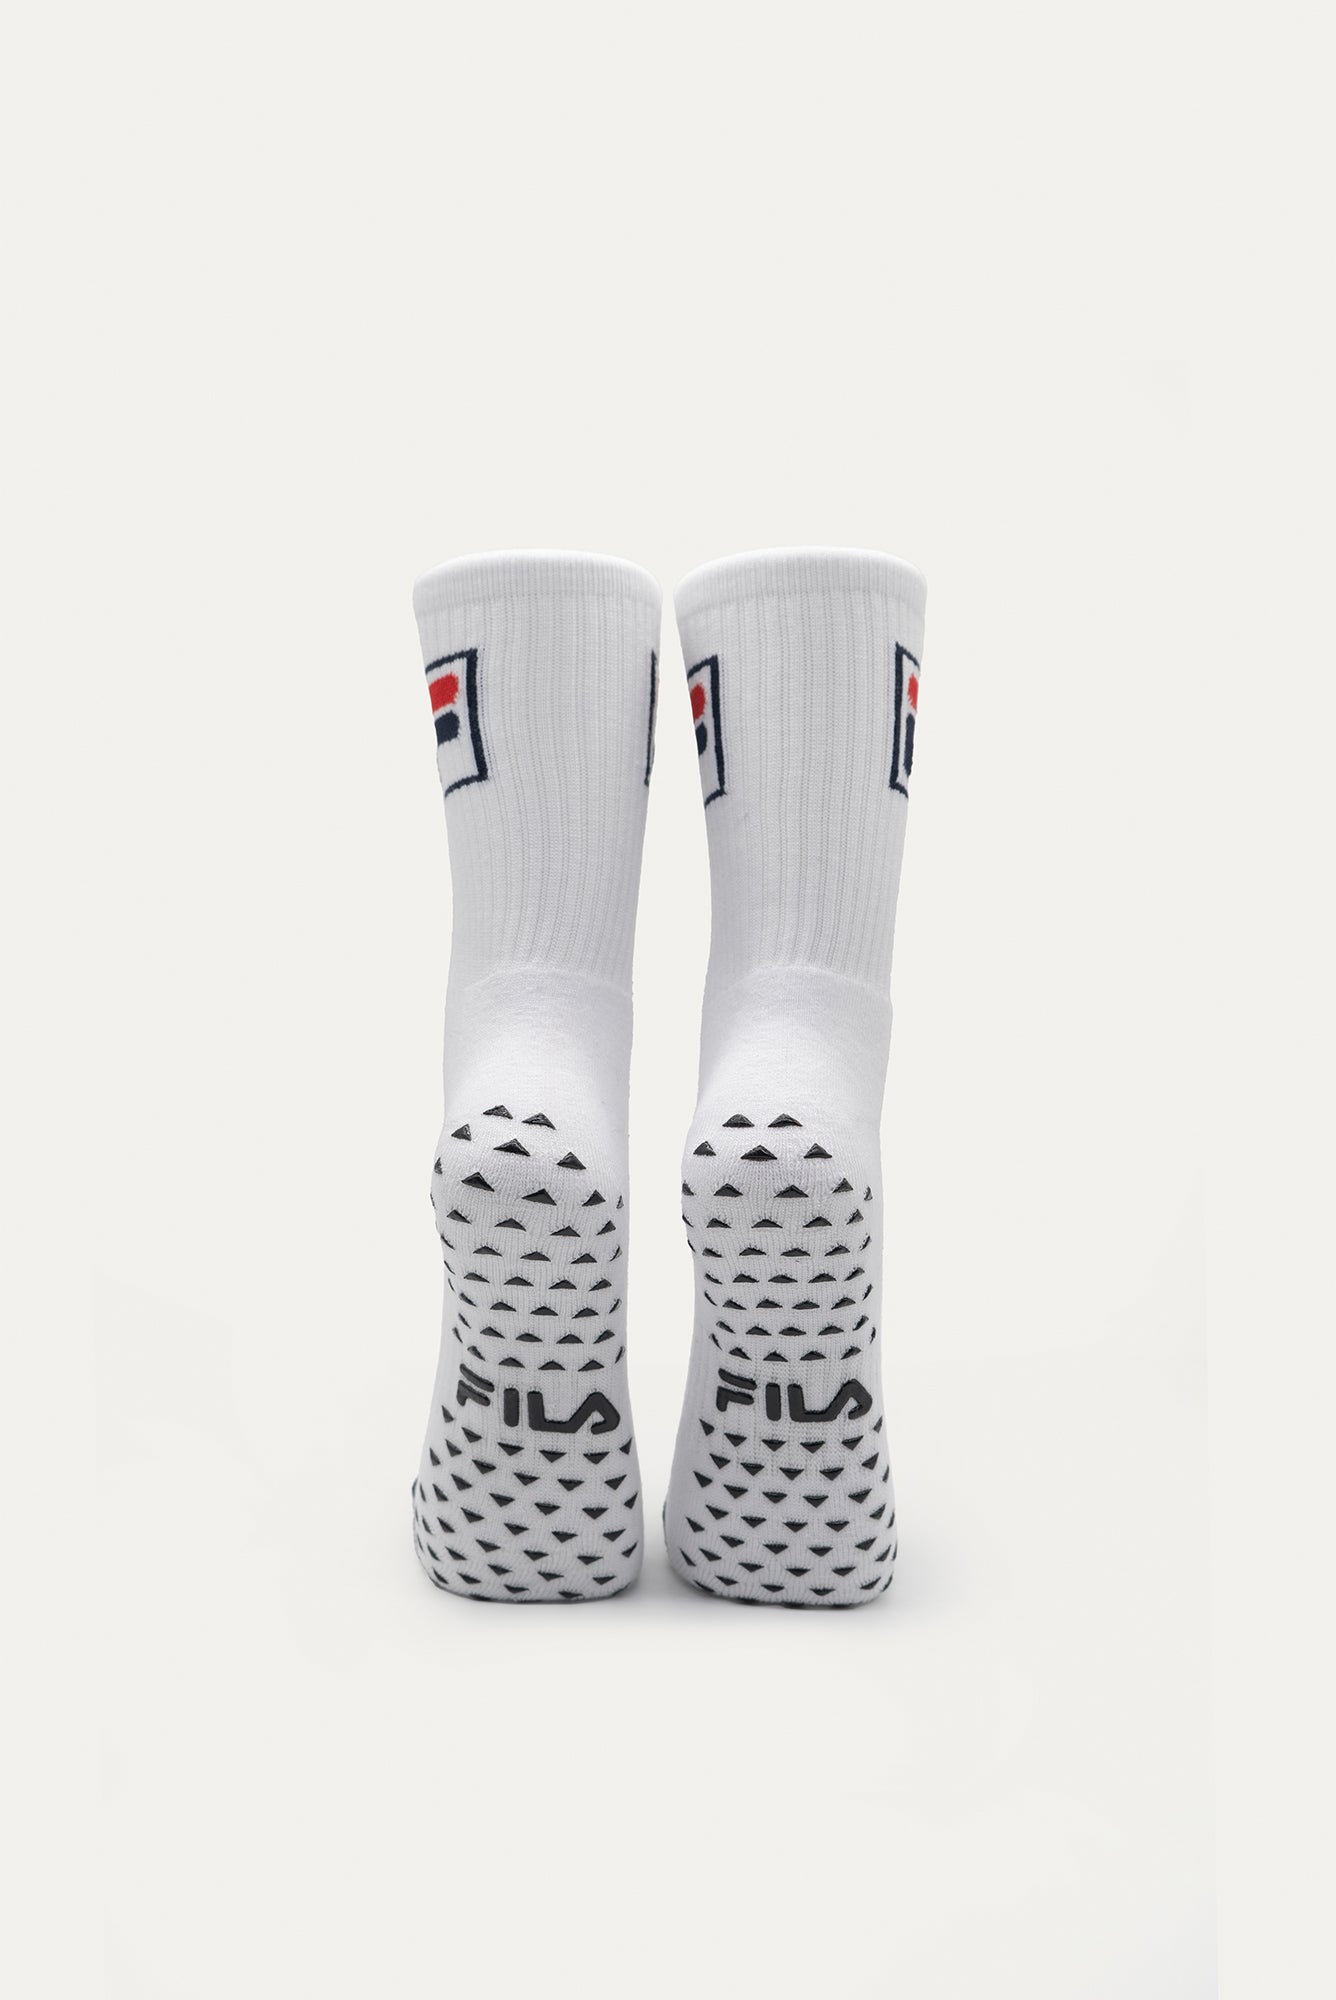 Kids Grip Socks – AFR Sports & Apparel Ltd